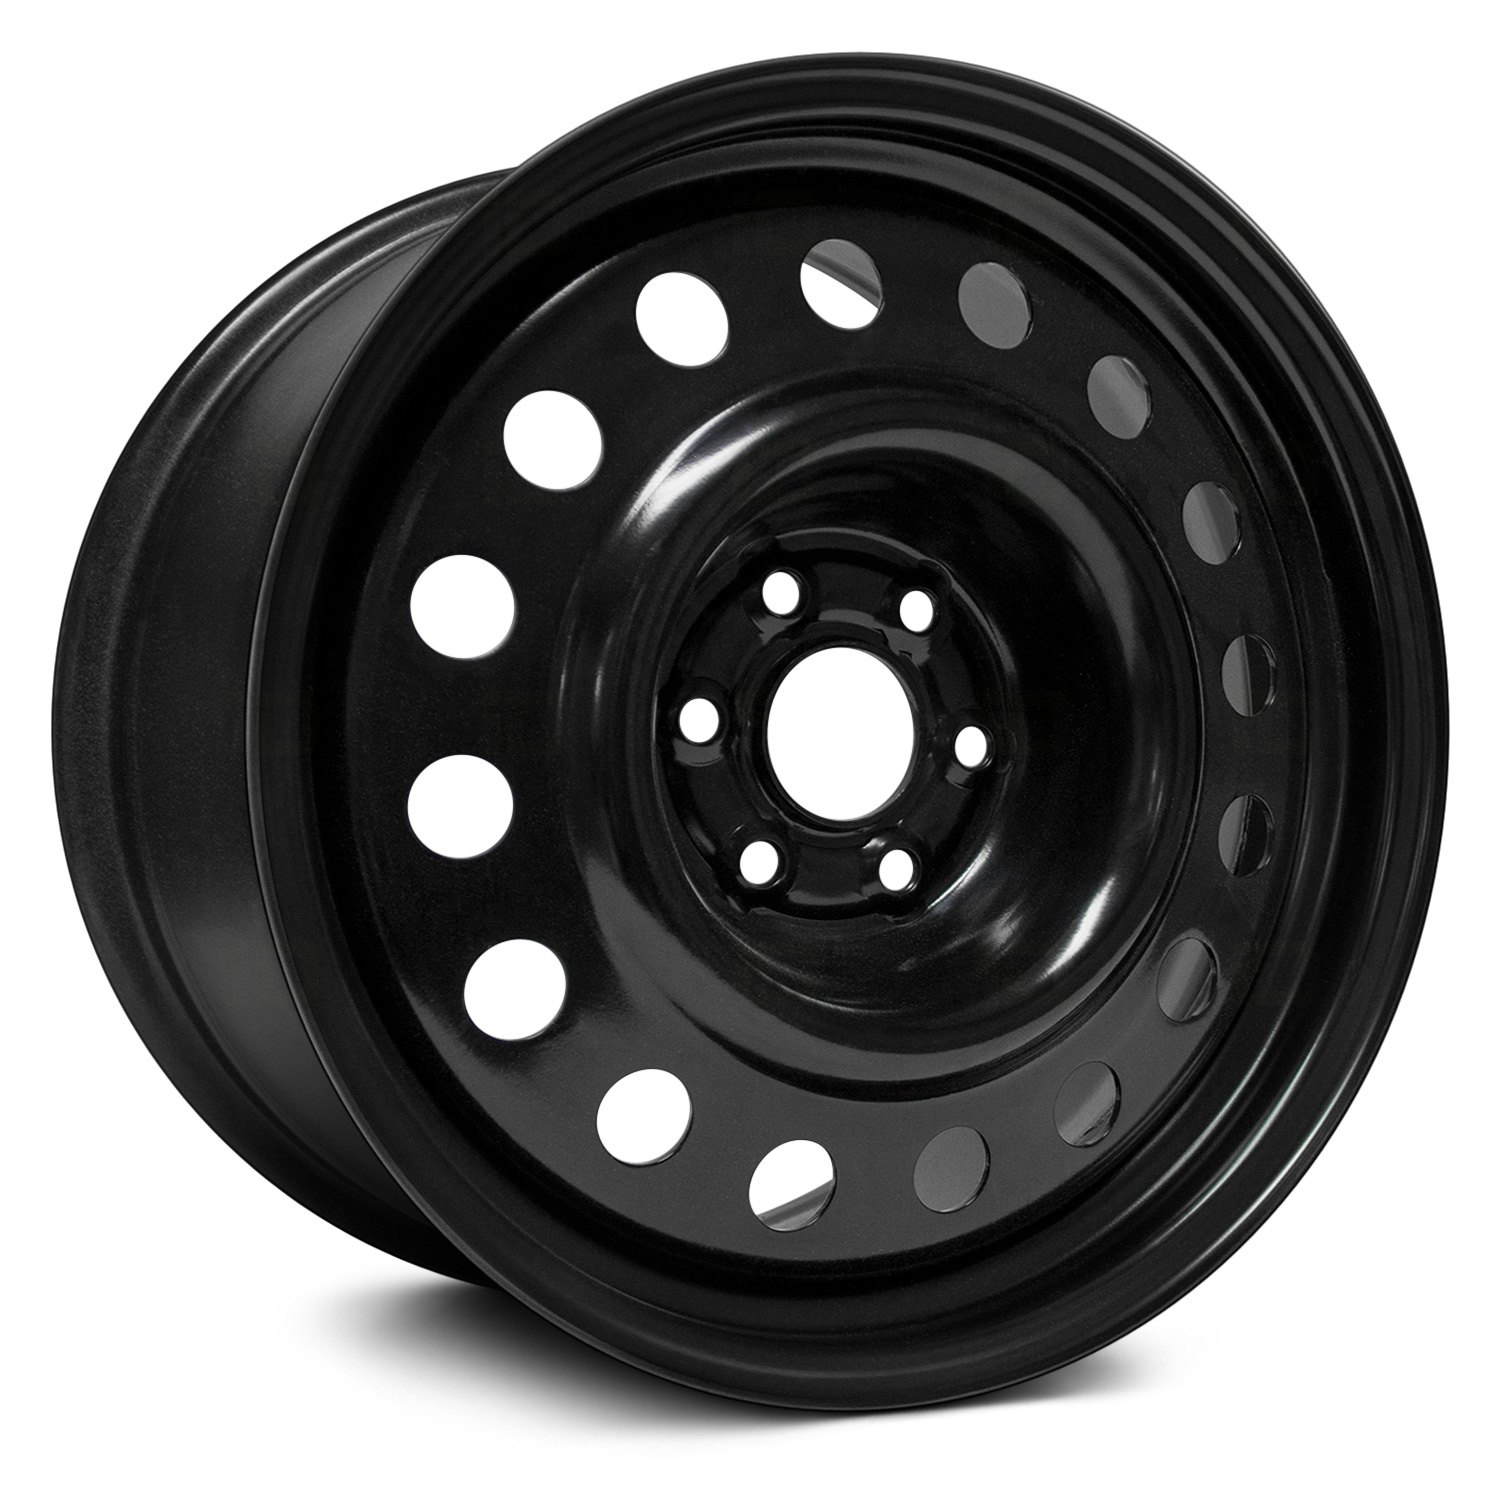 RT® 18" STEEL WHEEL 6 LUG Wheels Black Rims